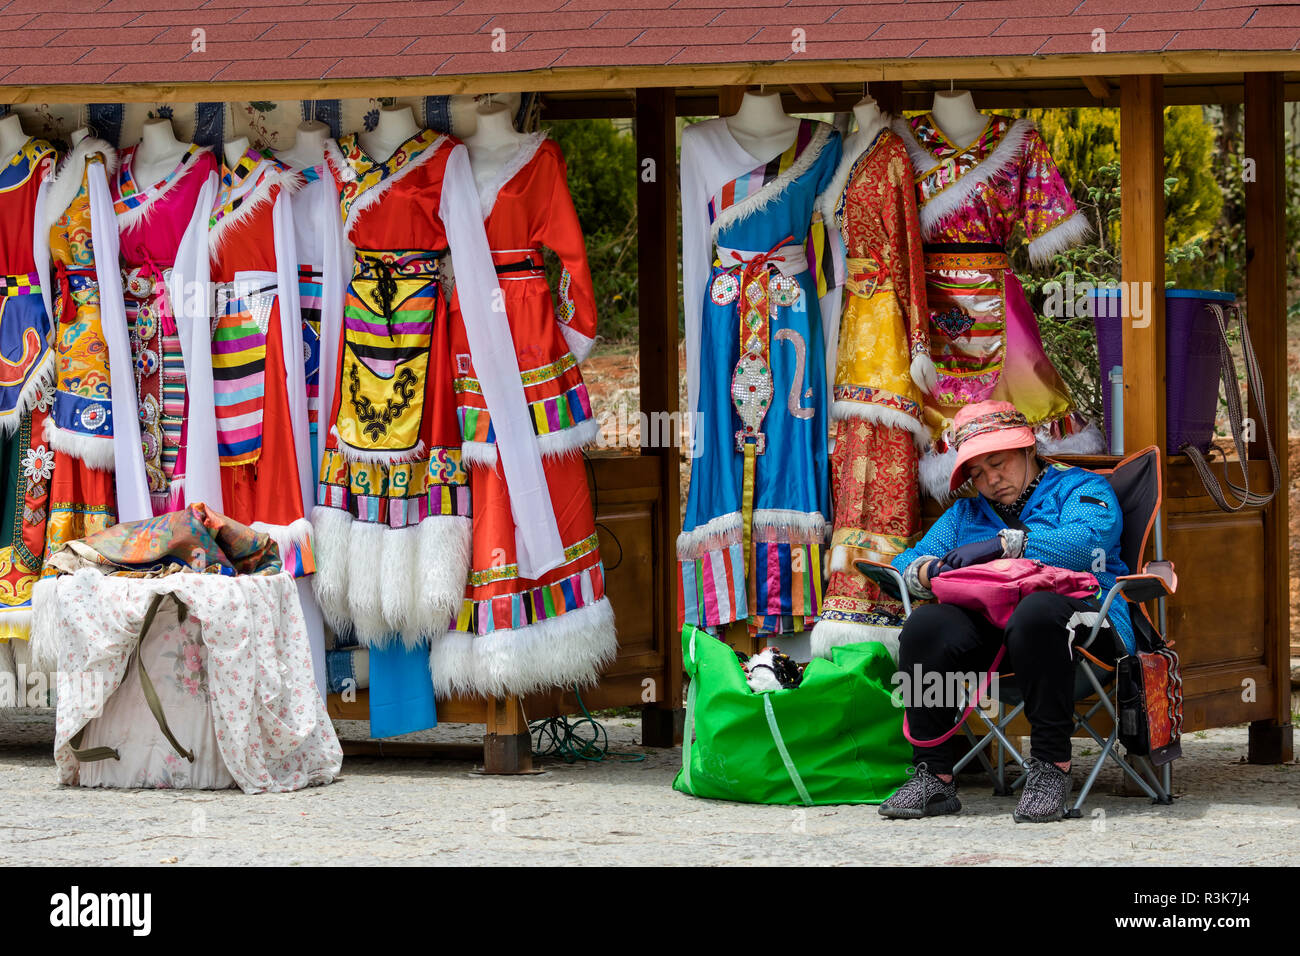 China, Provinz Yunnan, nordwestliches Yunnan, Shangri-La, City Square. Bunte tibetische Kleider, die Touristen in für Fotografien kleiden können. Stockfoto